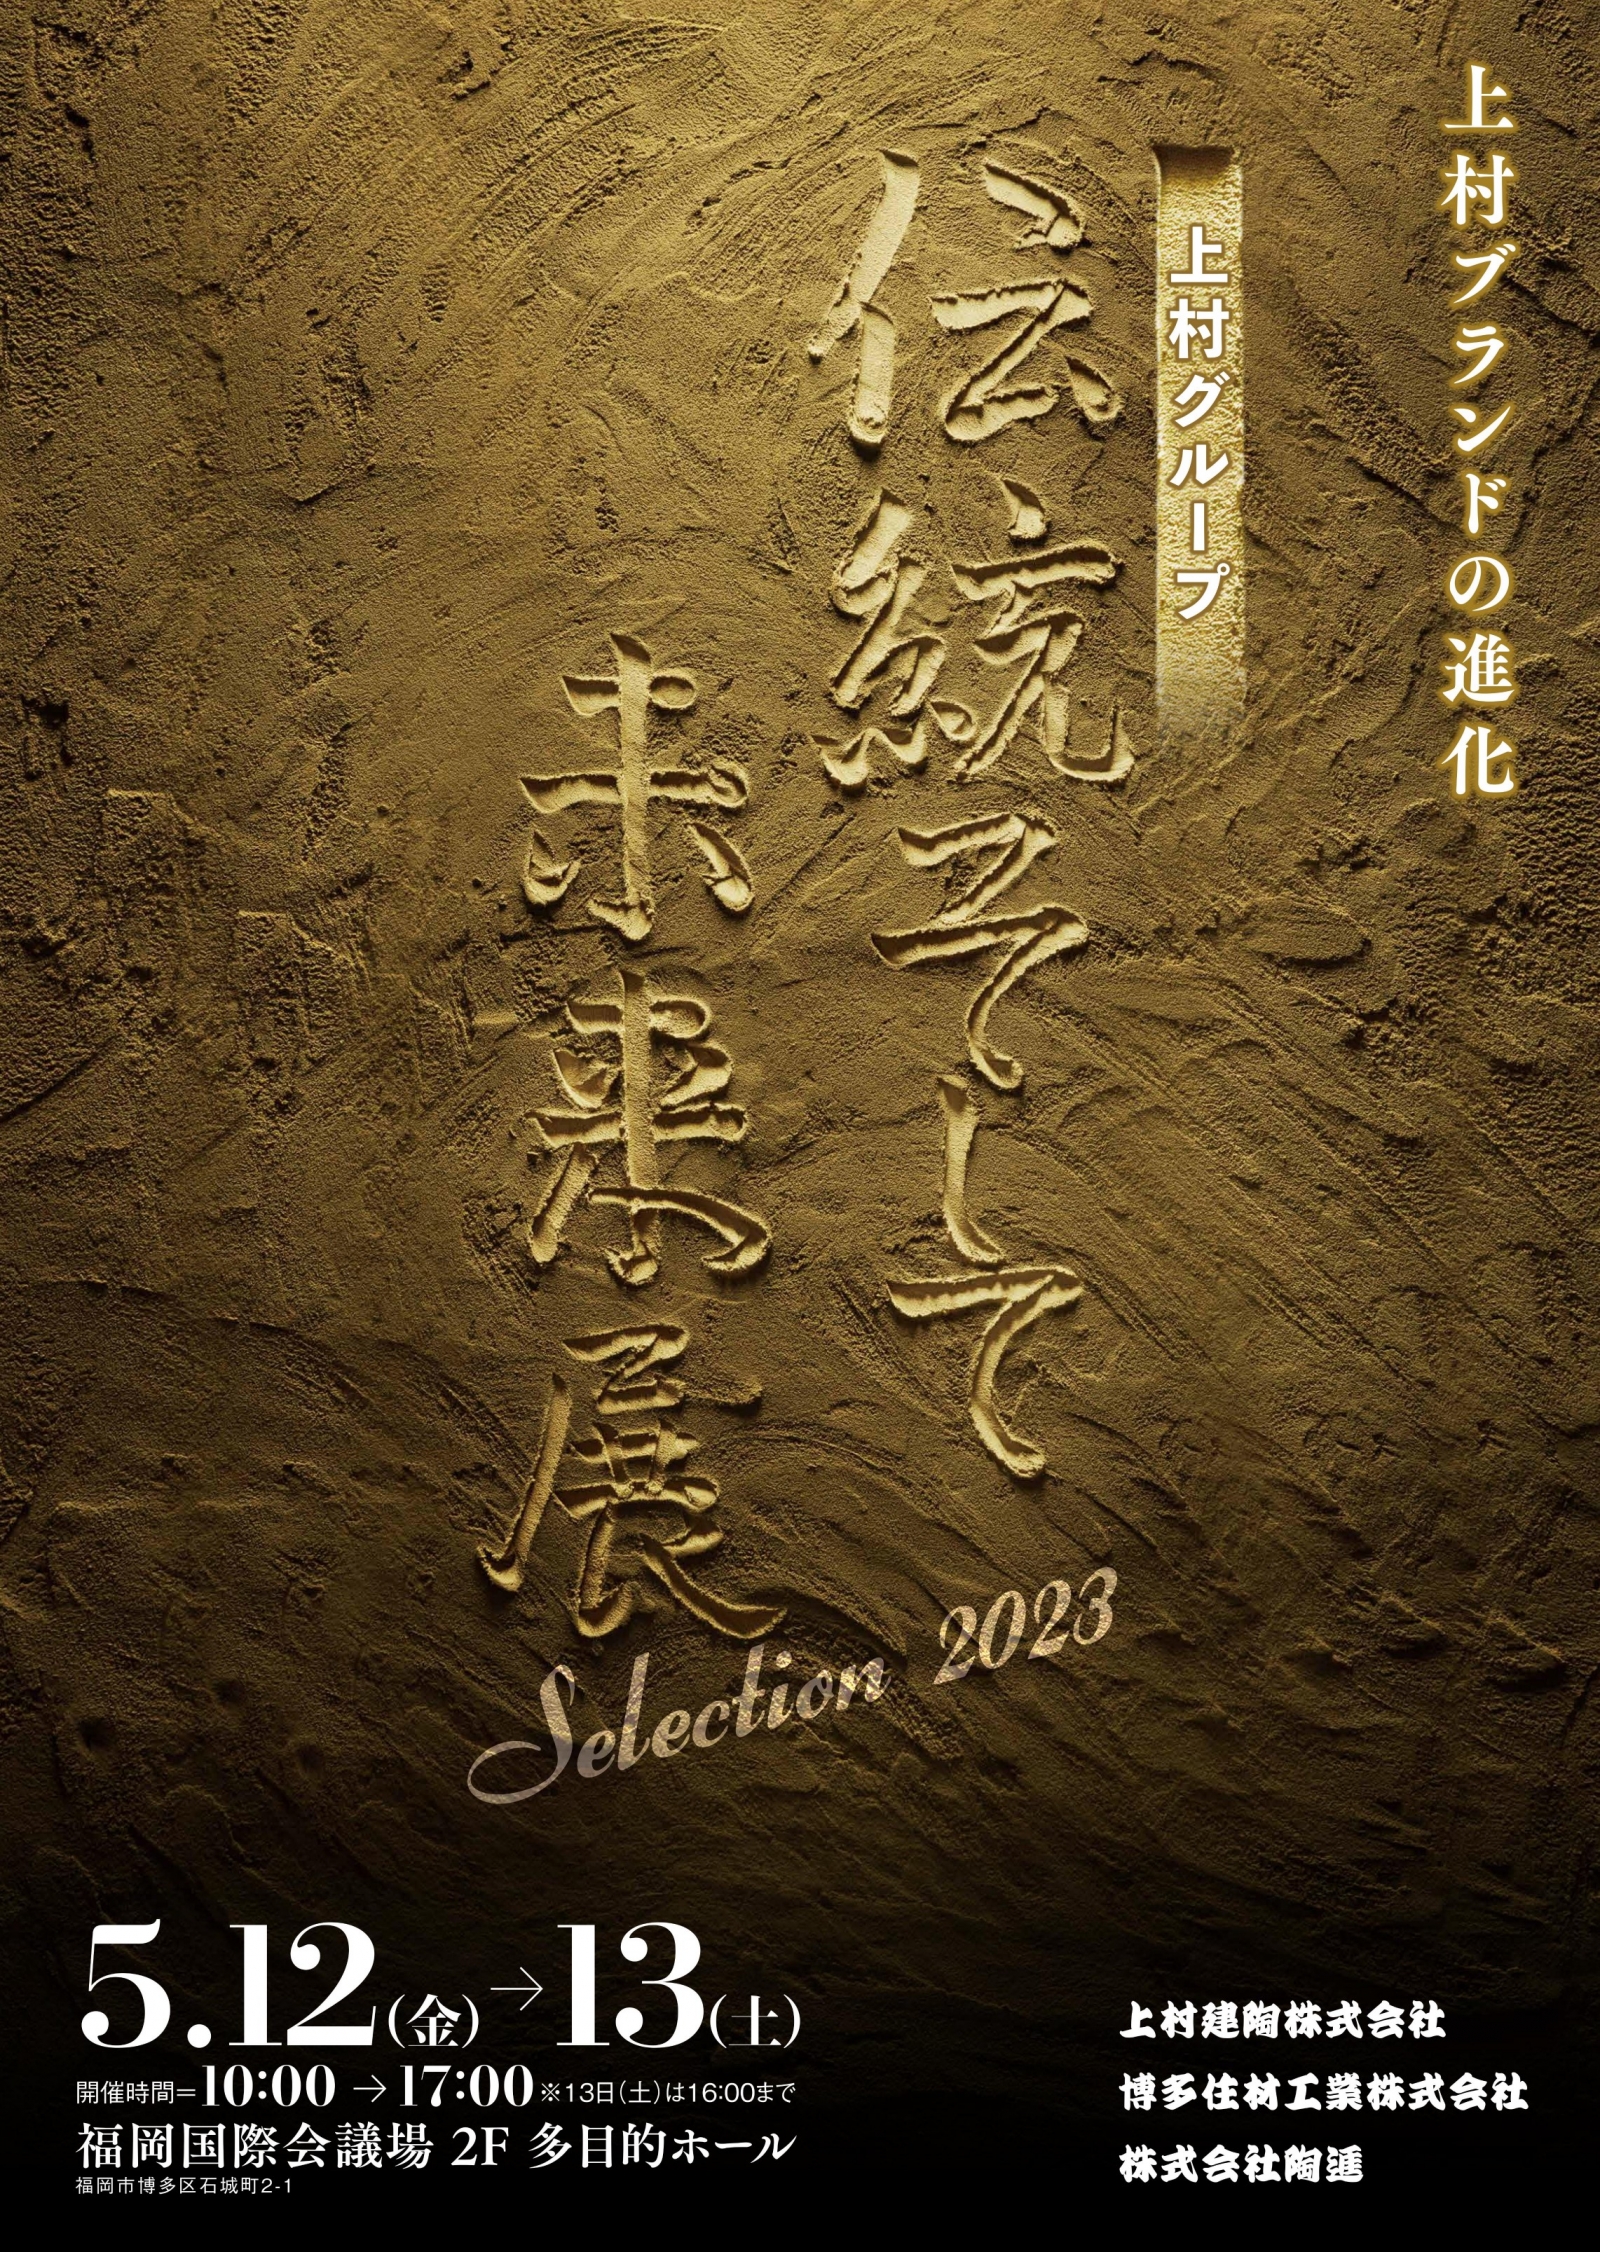 展示会開催のお知らせ「上村グループ 伝統そして未来展 Selection2023」